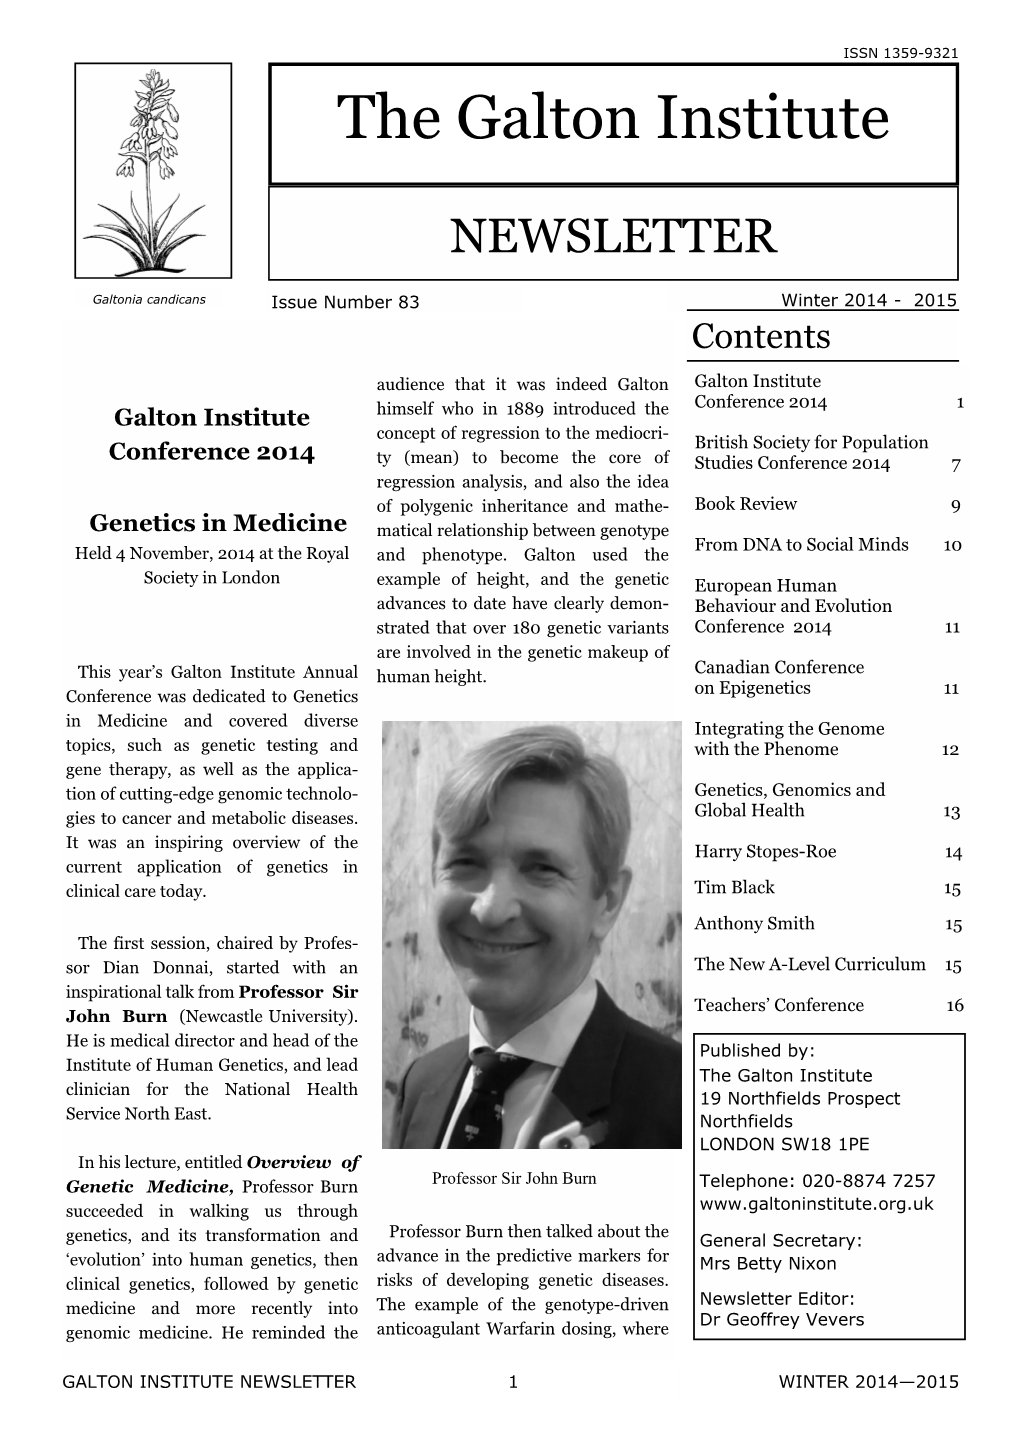 Newsletter Winter 2014-15.Pub